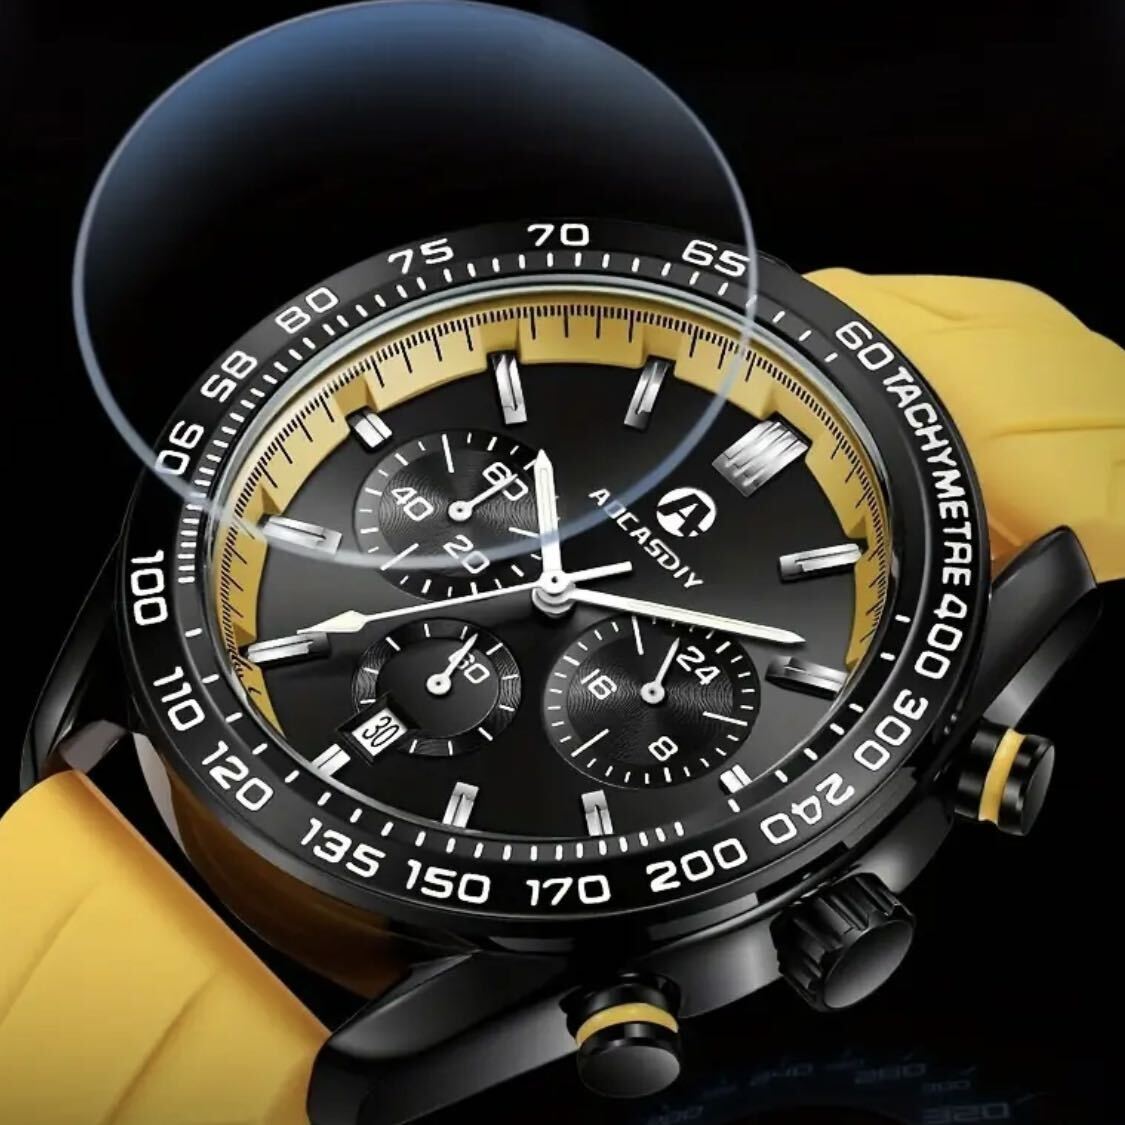 新品 AOCASDIY オマージュクロノグラフウォッチ ラバーストラップ メンズ腕時計 イエロー A2996